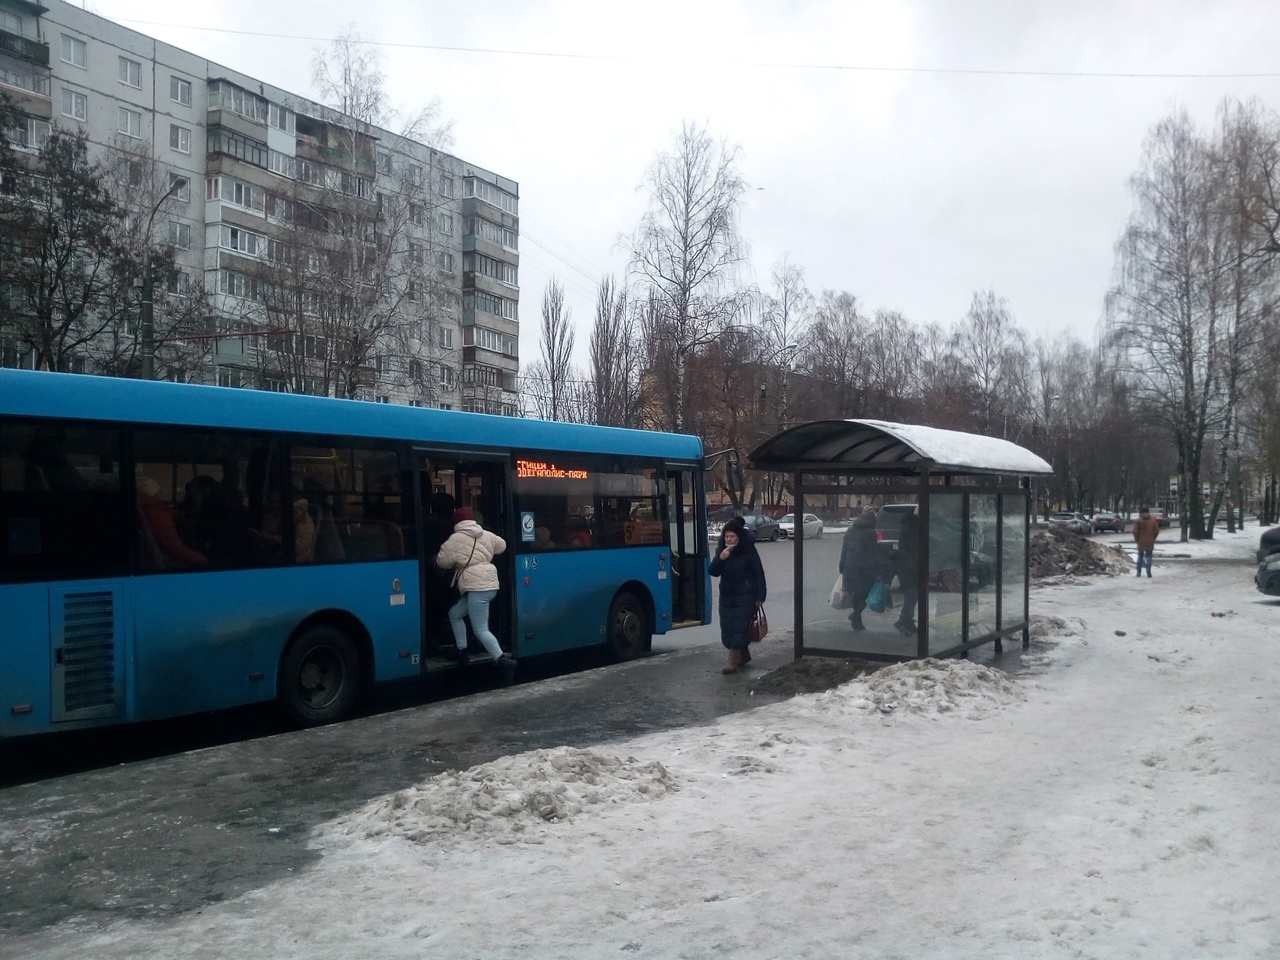 Региональный информационный центр ответил на вопросы жителей Брянска по оплате проезда в общественном транспорте